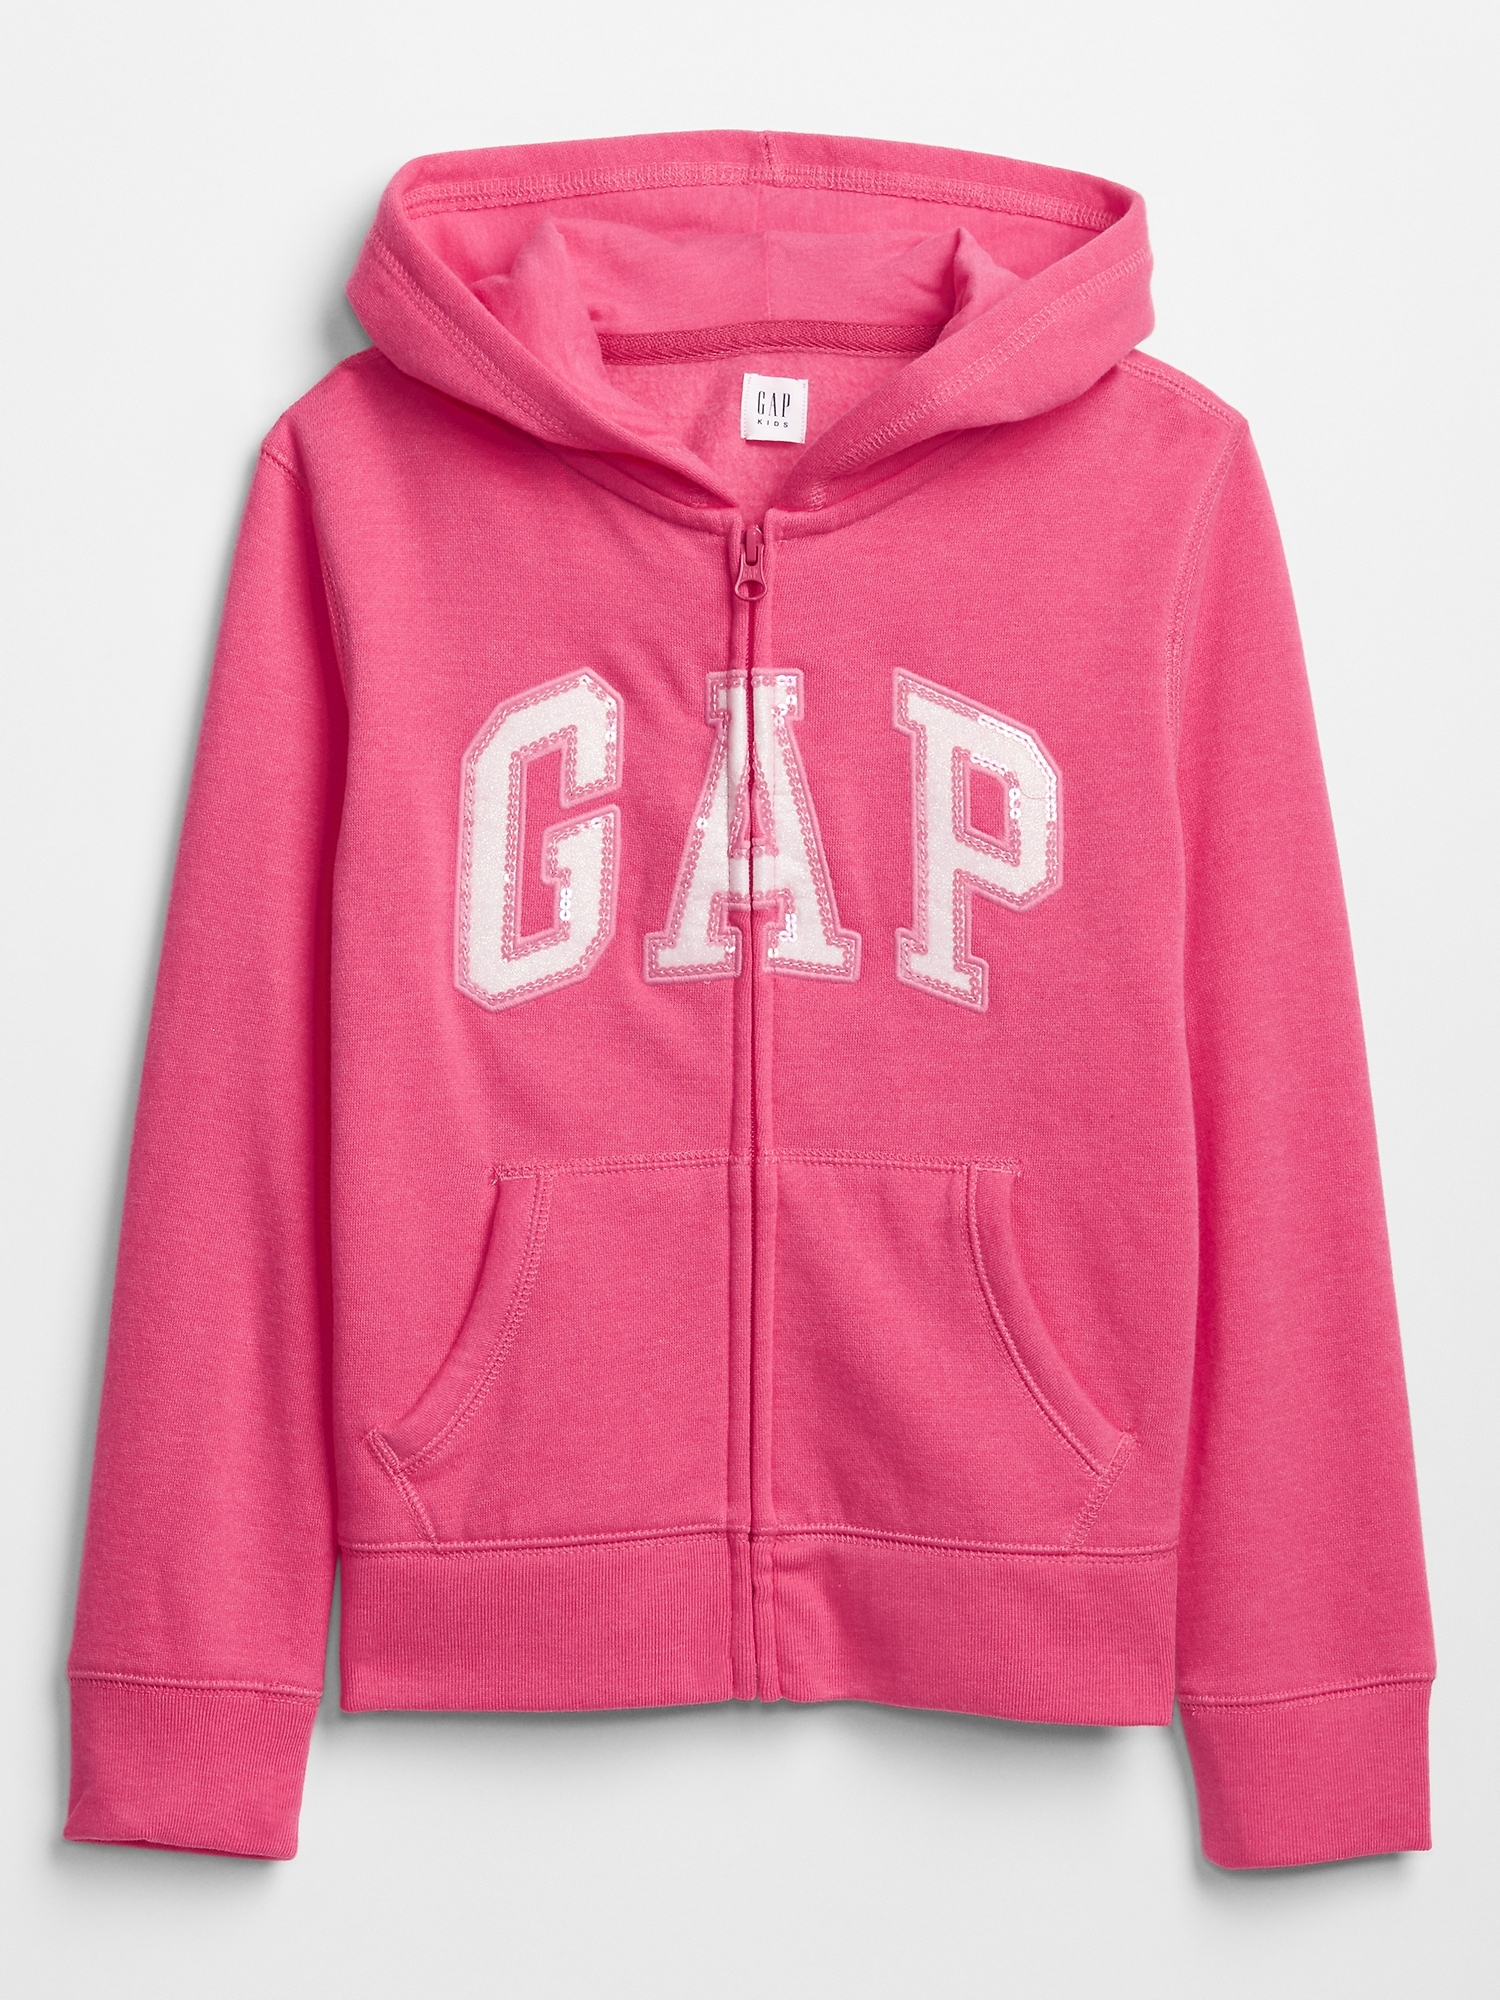 gap jacket kids